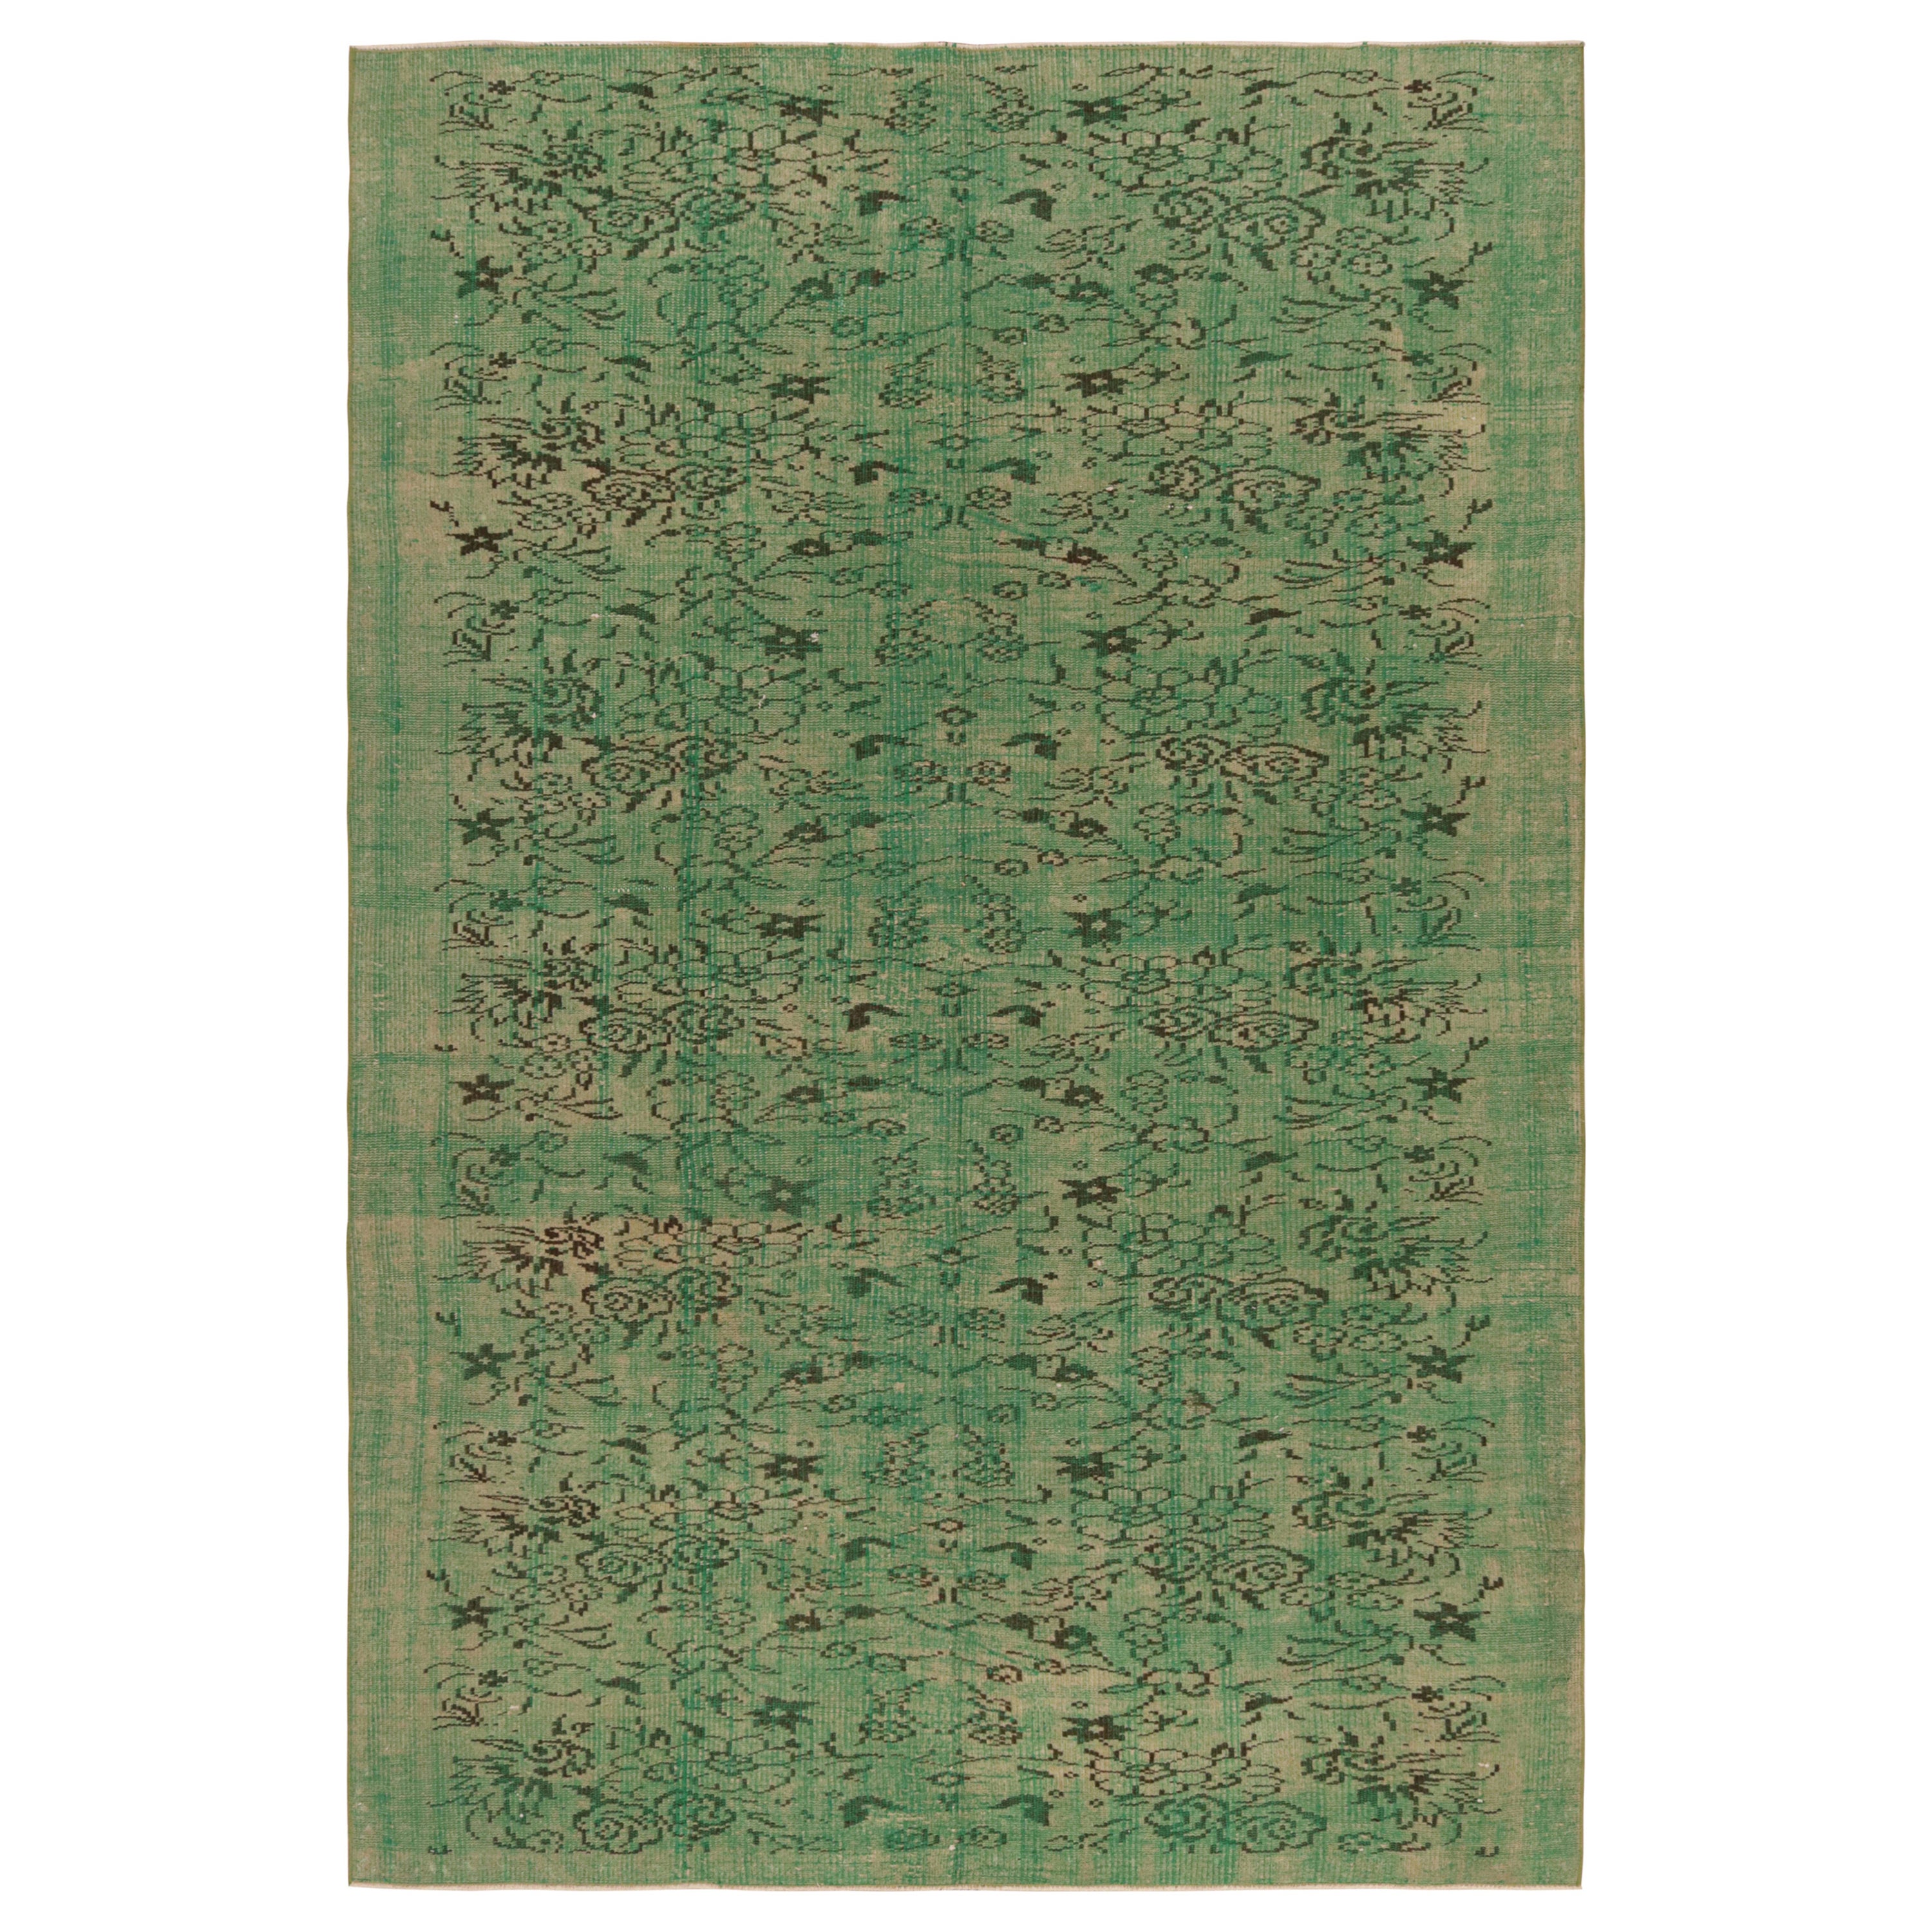 Vintage Zeki Müren Teppich in Grün mit Blumenmustern, von Rug & Kilim